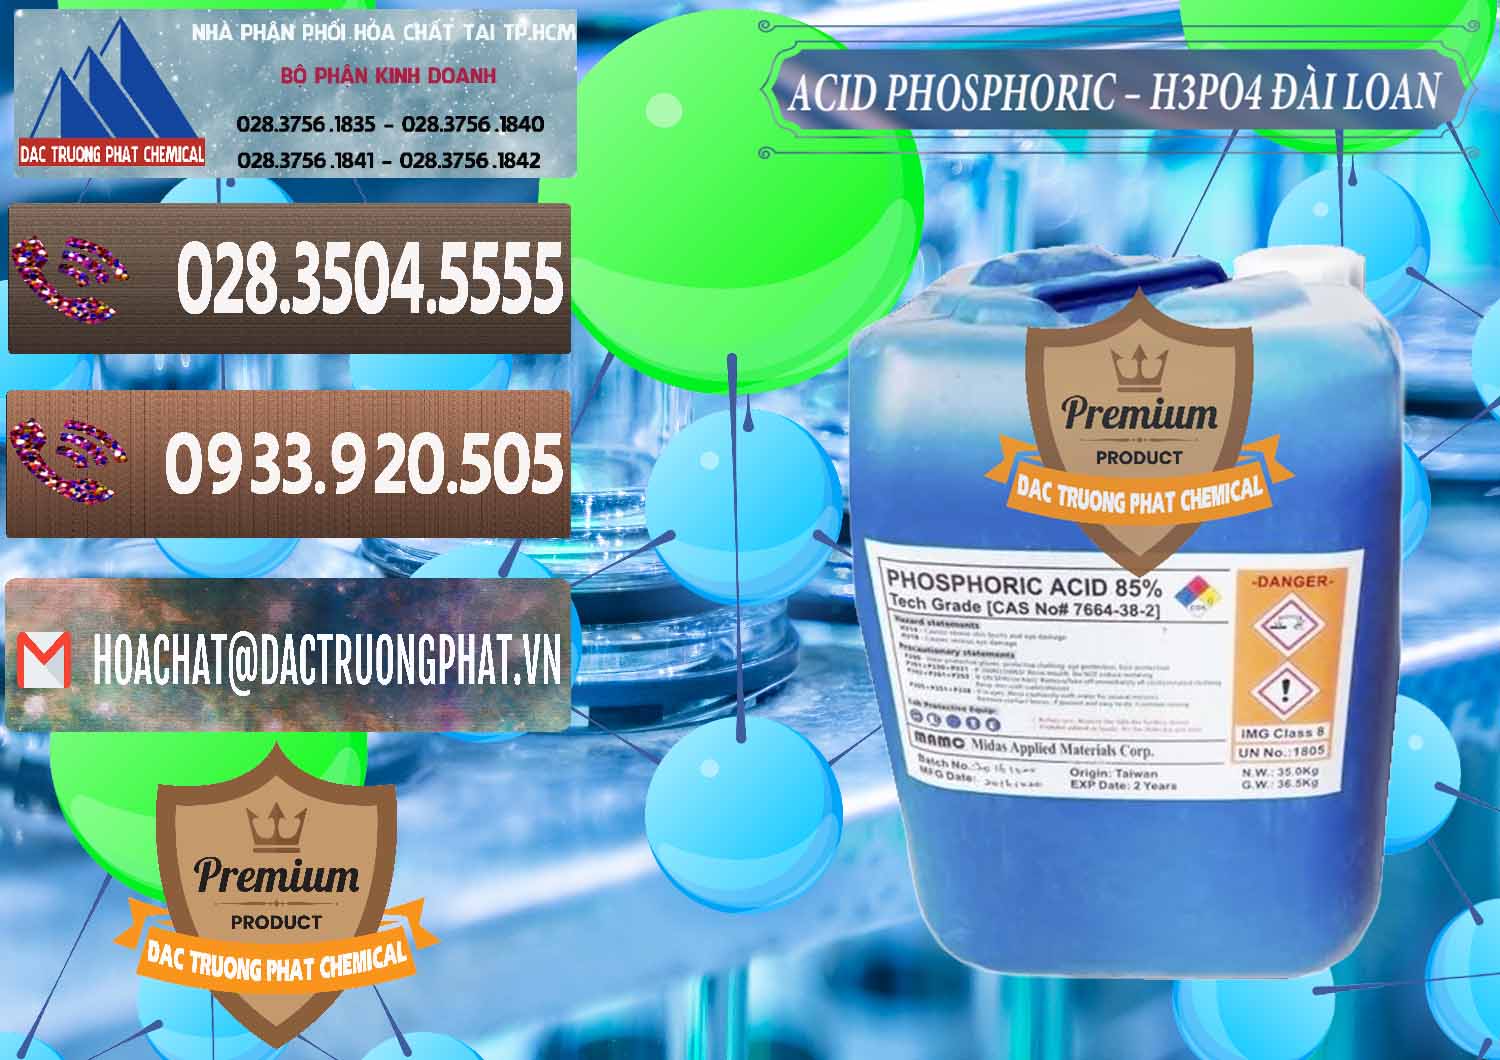 Nơi chuyên kinh doanh ( bán ) Axit Phosphoric - Acid Phosphoric H3PO4 85% Đài Loan Taiwan - 0351 - Nơi chuyên bán và phân phối hóa chất tại TP.HCM - hoachatviet.net